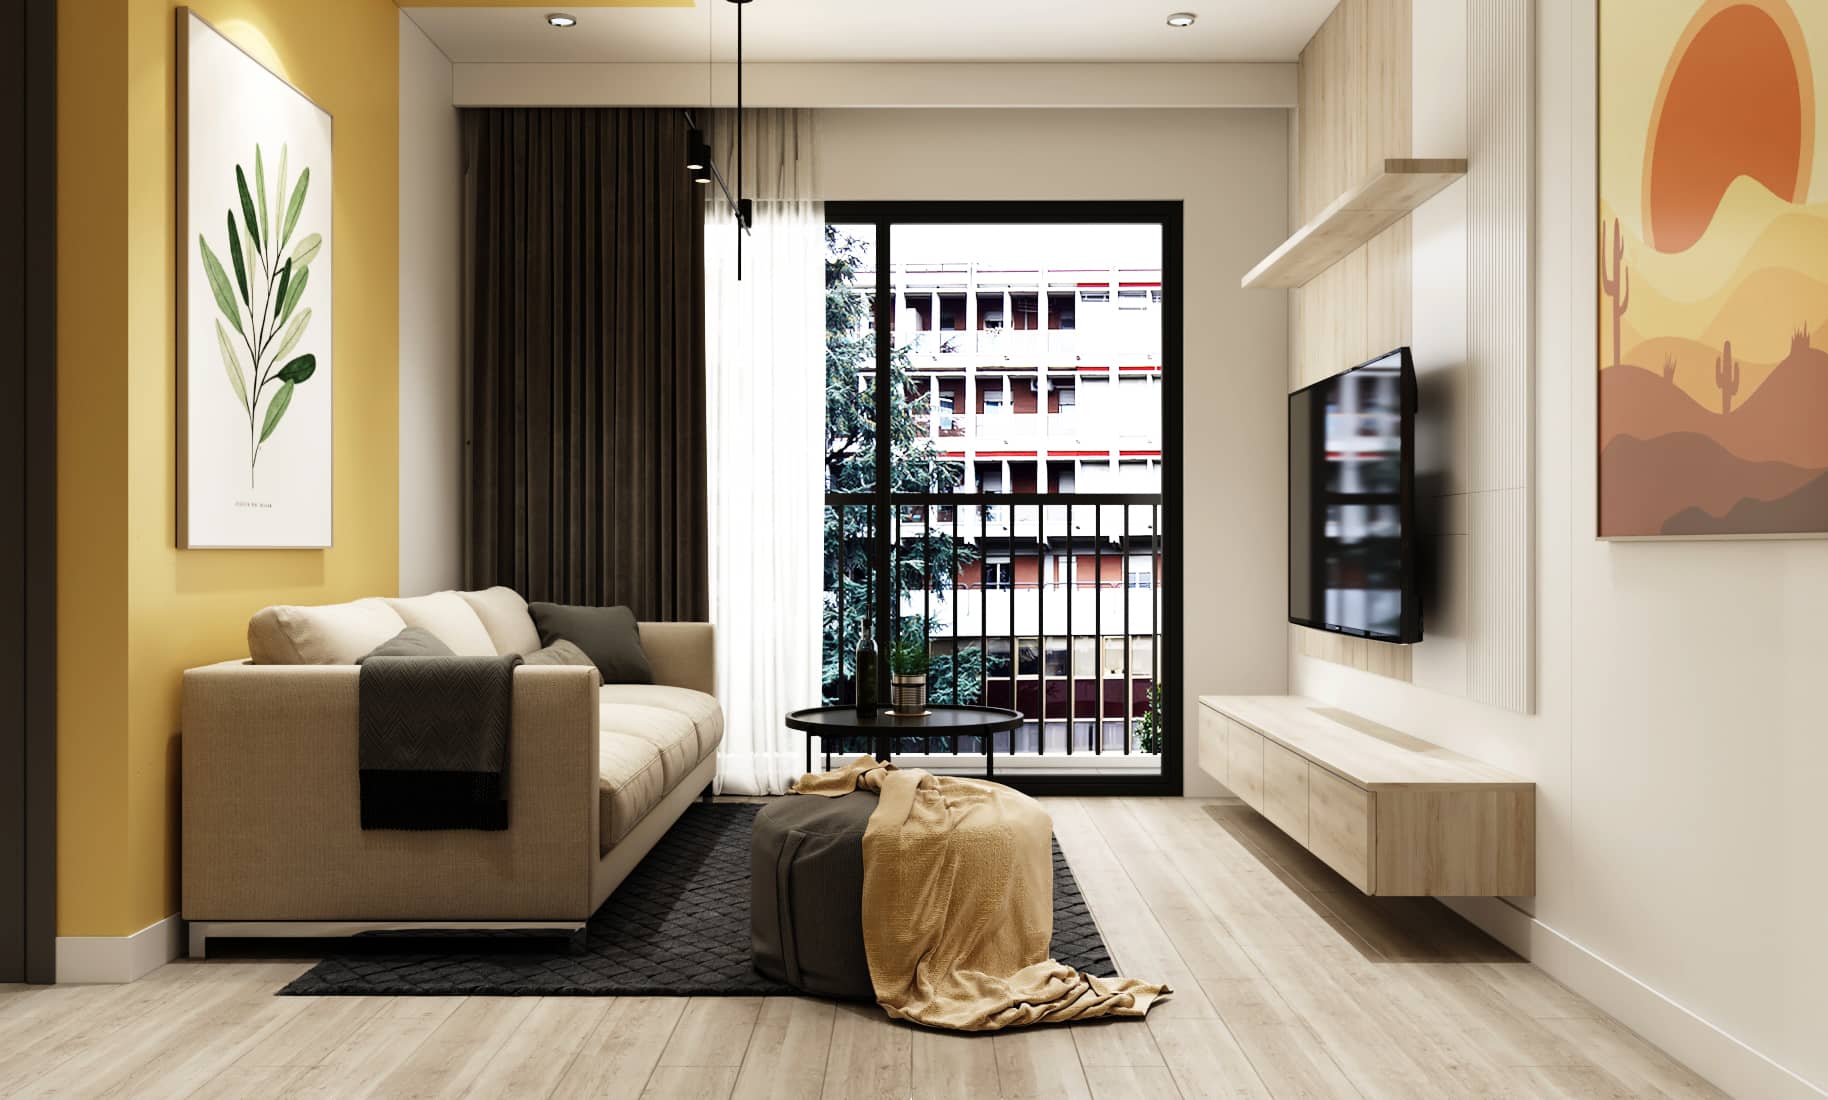 Thiết kế nội thất nhà ở mang đến không gian sống ấn tượng, hài hòa